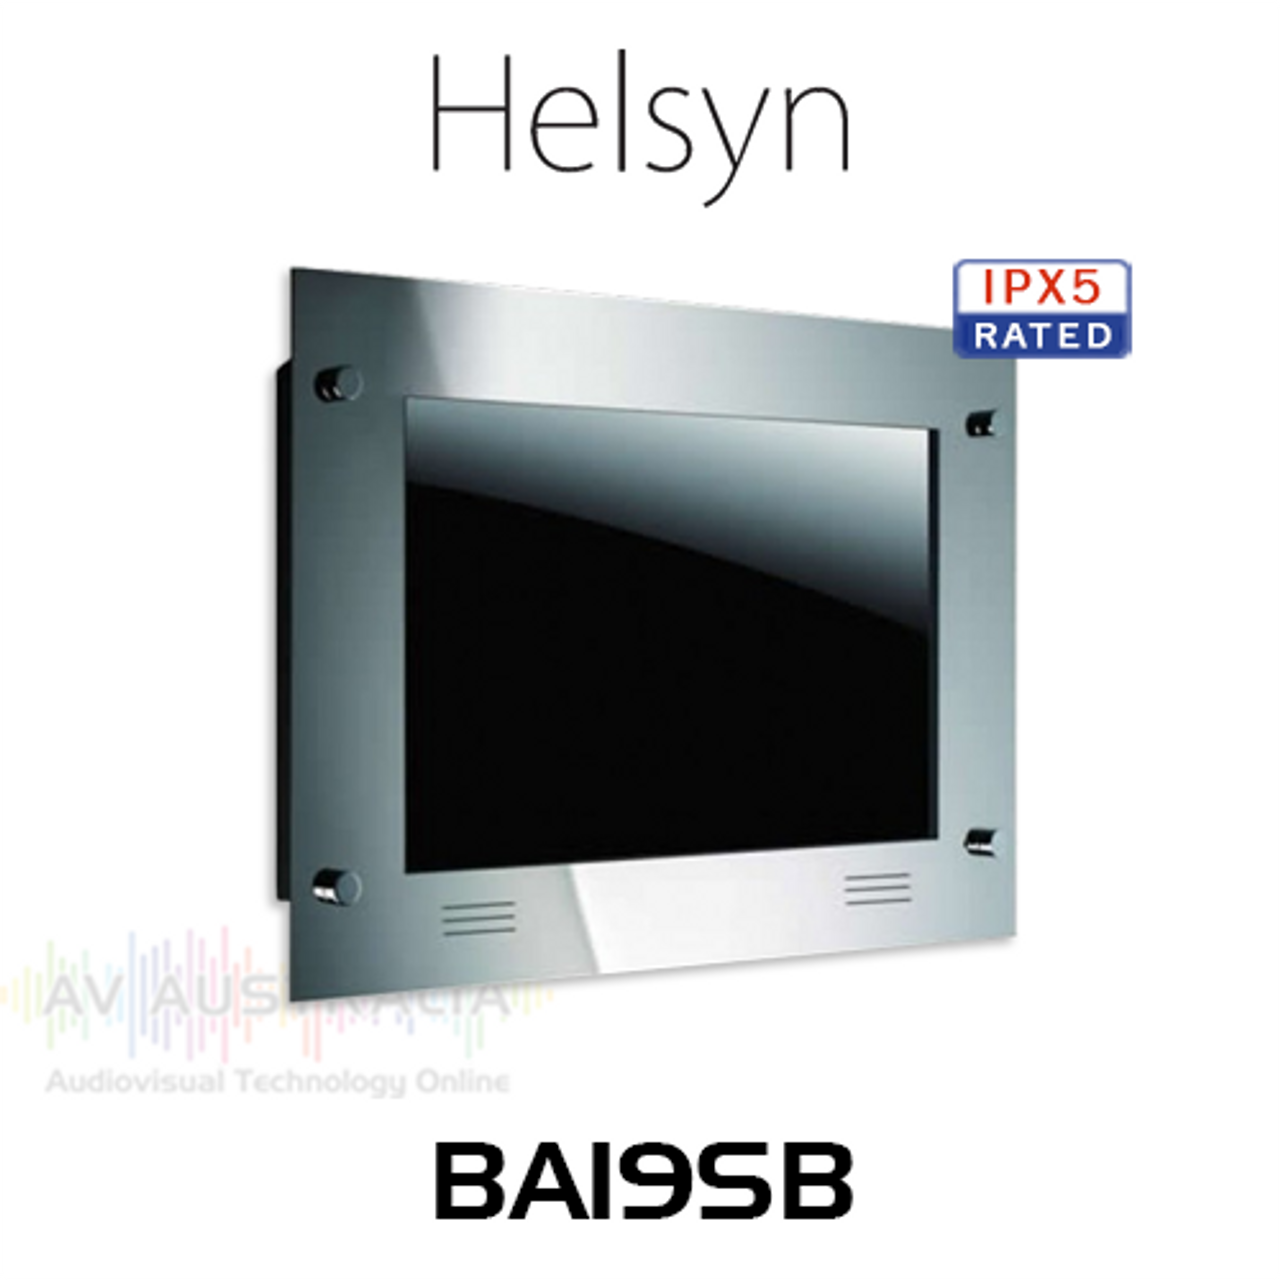 Helsyn 19" IPX5 Waterproof Widescreen LED TV